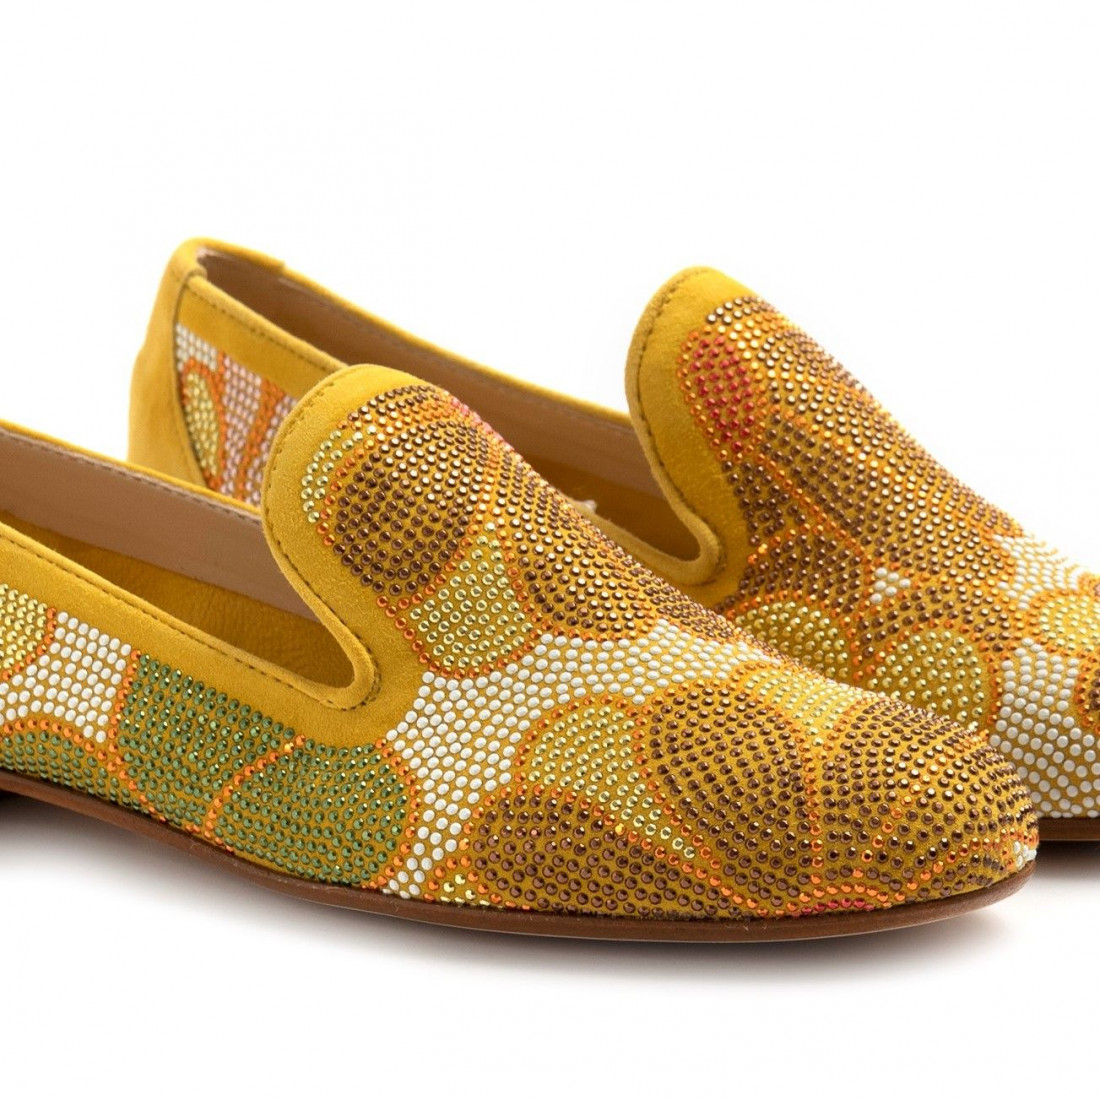 Zapato Belle Vie modelo Via Danesi amarillo con pedrería de colores